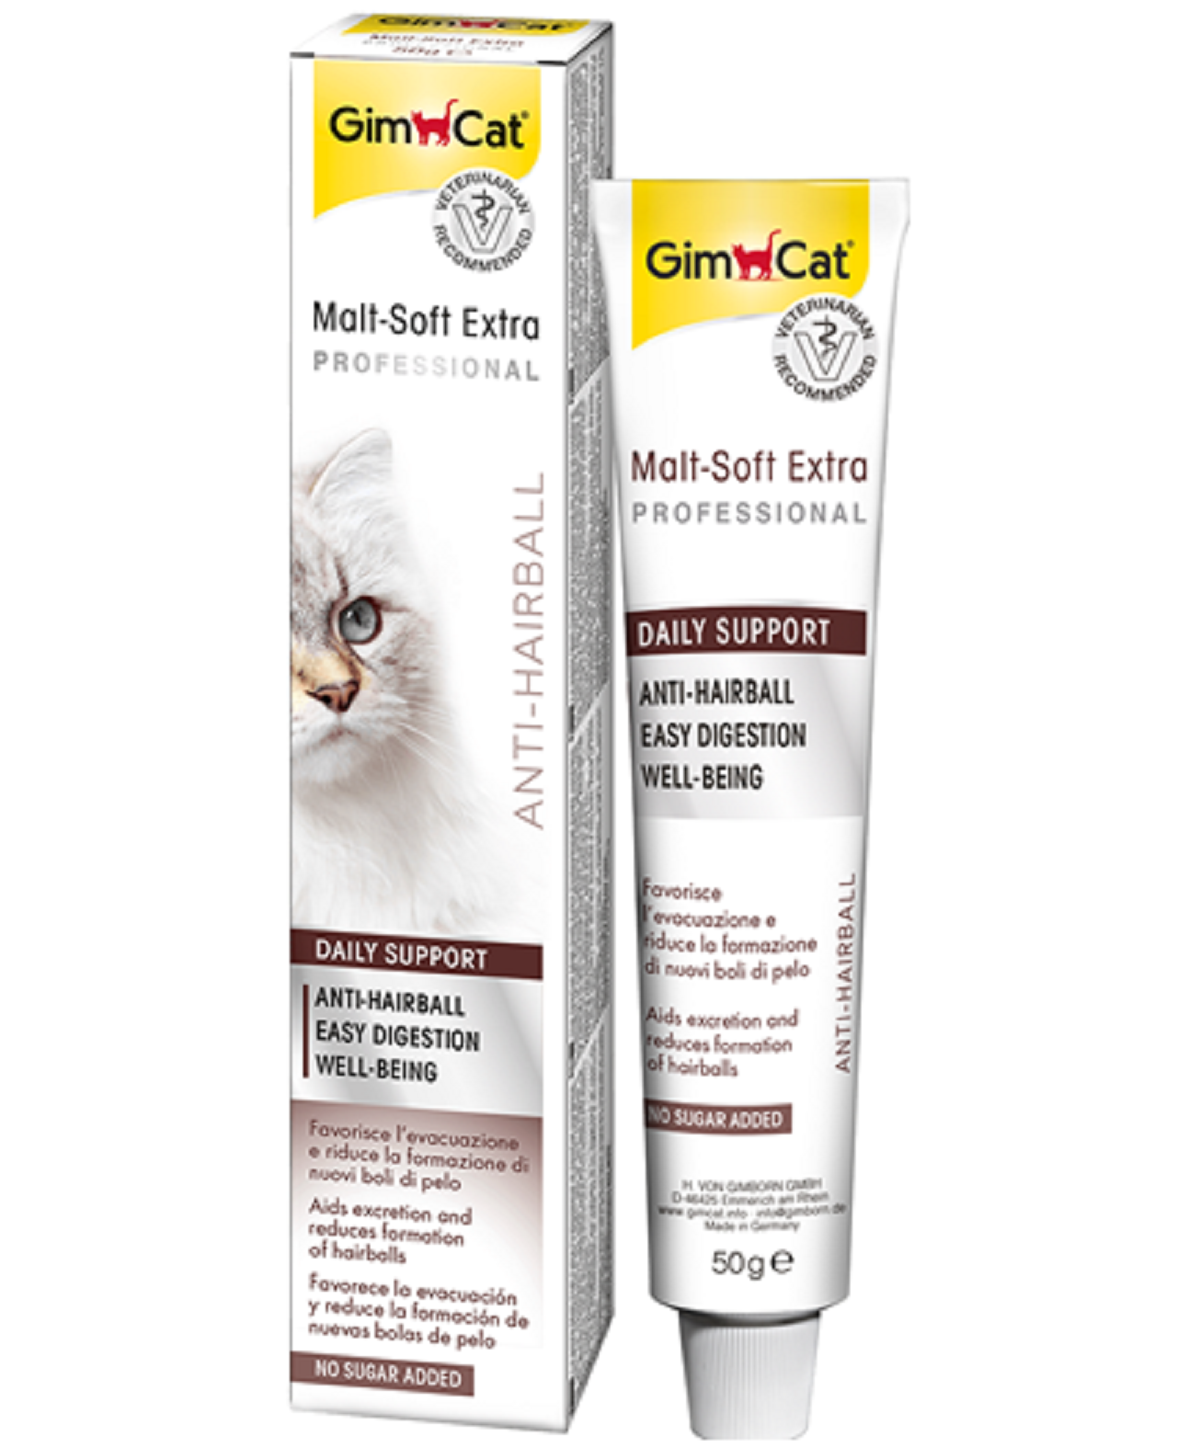 GimCat Professional Paste for Cat Multi Vitamin, Kitten Paste, Malt Soft Extra vitamins strengthen immune system energy active hairball health cat paste